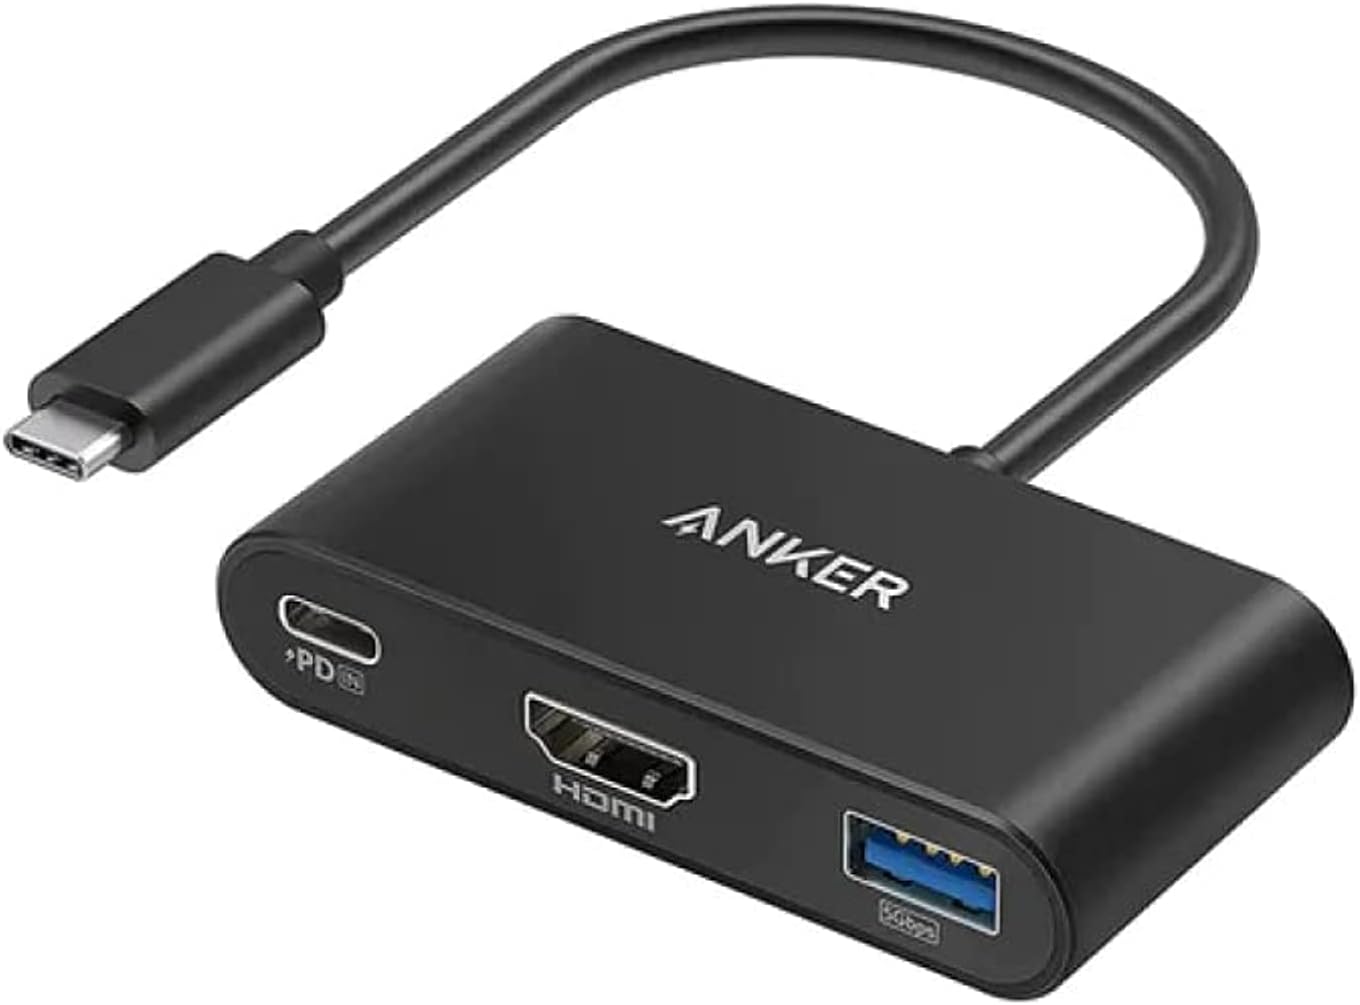 Anker USB C Hub, PowerExpand 3-in-1 USB C Hub A8339 Three store